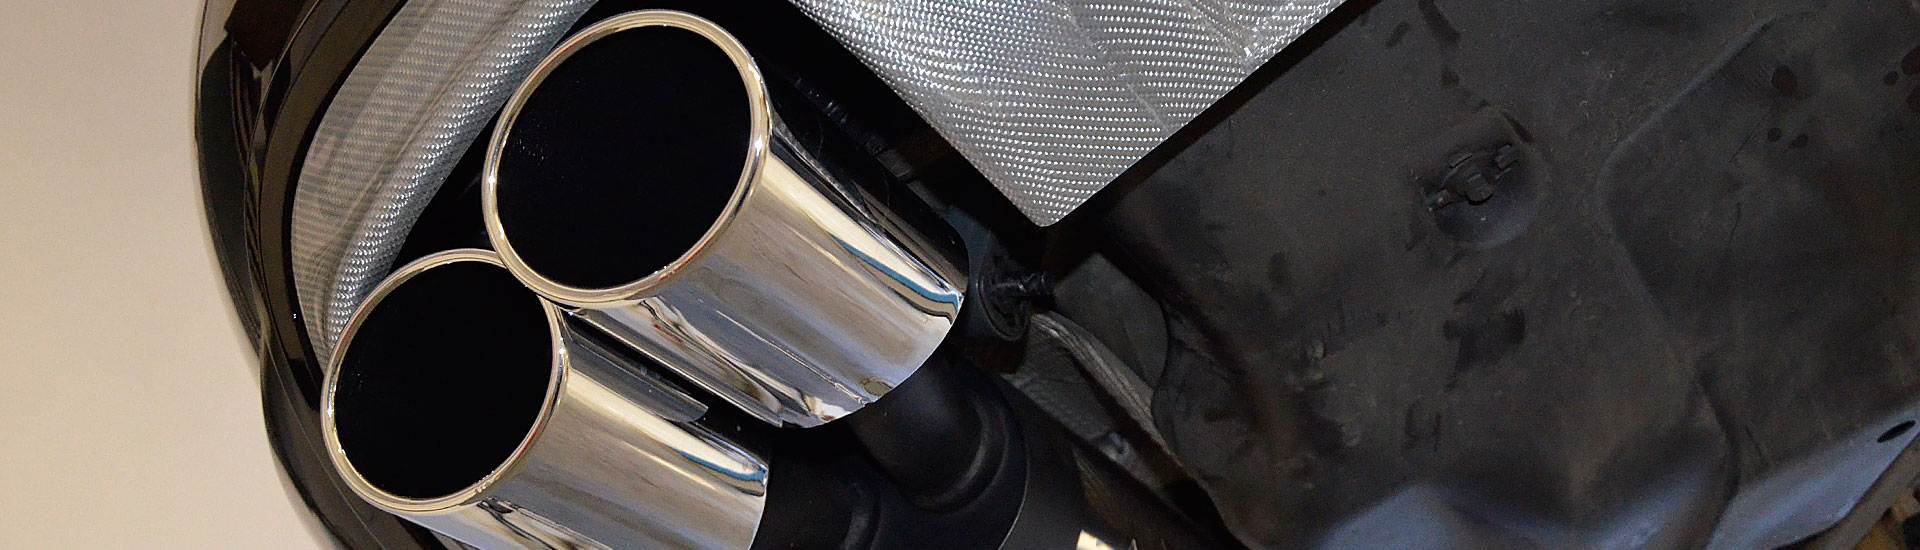 C207 A207 Mercedes Tuning AMG Bodykit Felgen Auspuff Spurverbreiterung Carbon